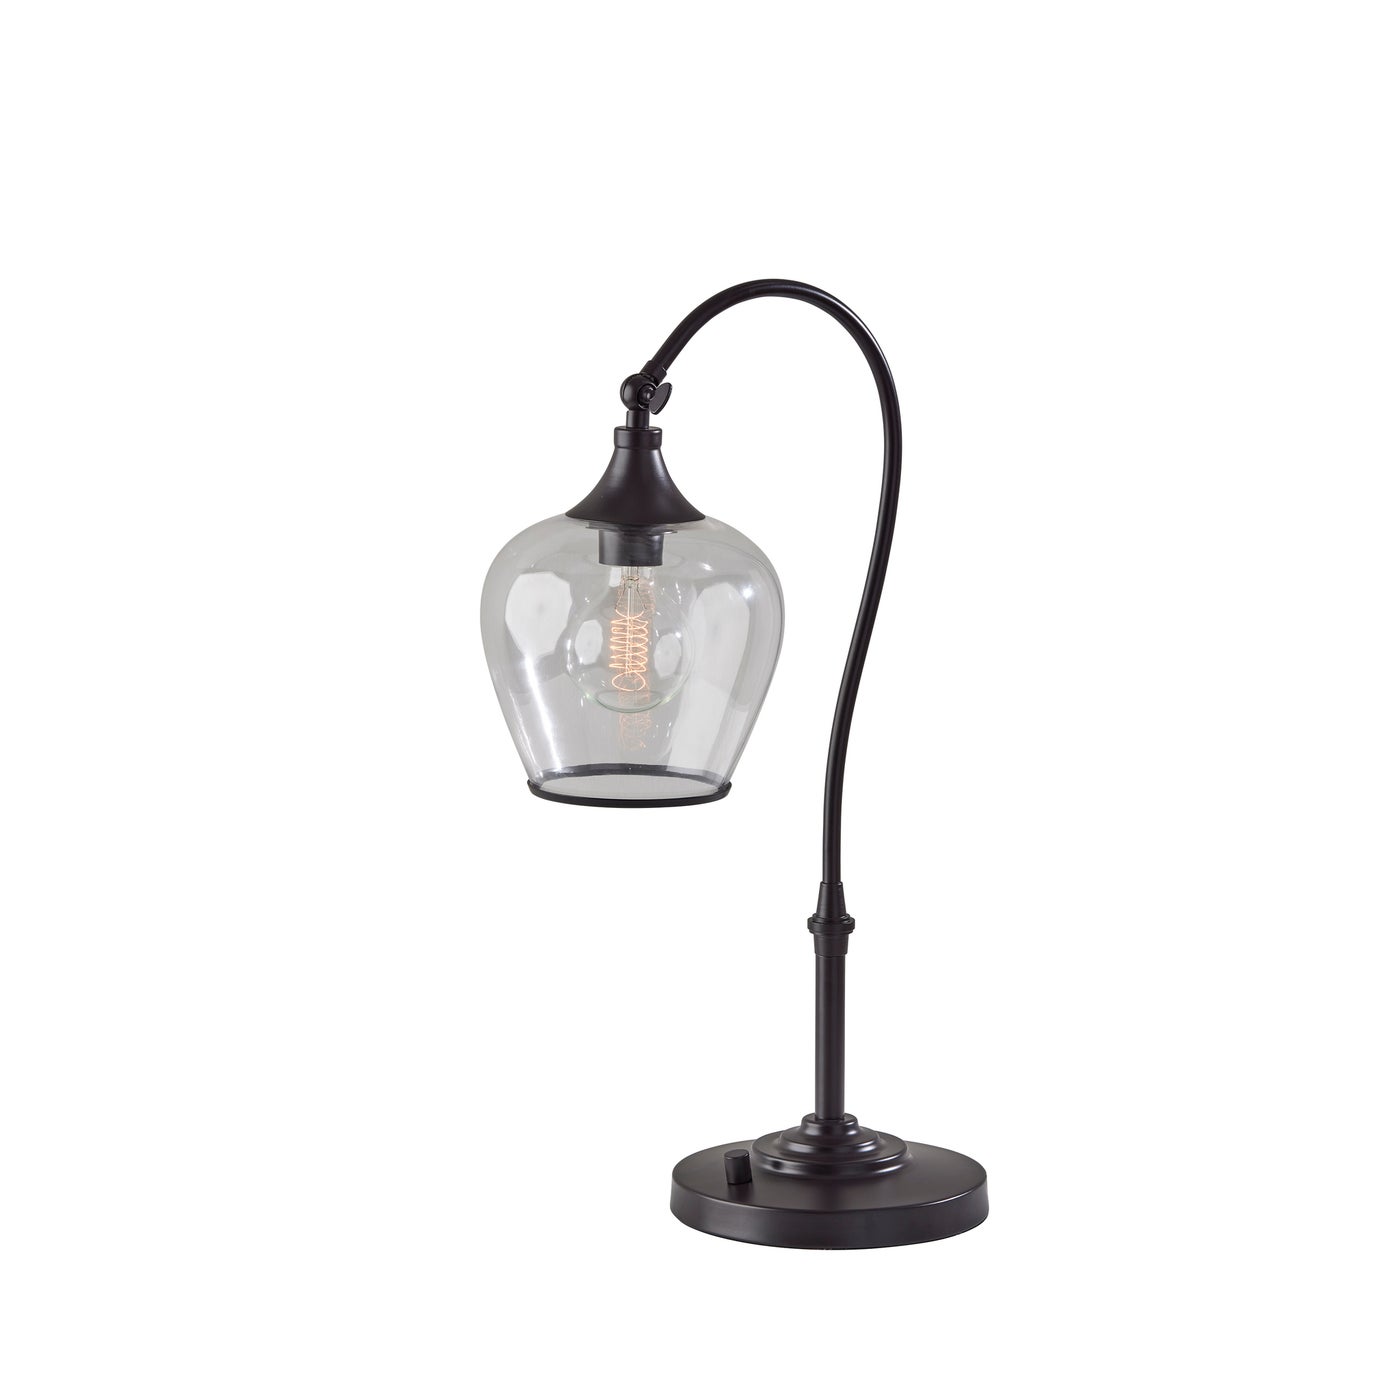 Adesso Home - 3922-26 - Desk Lamp - Bradford - Dark Bronze